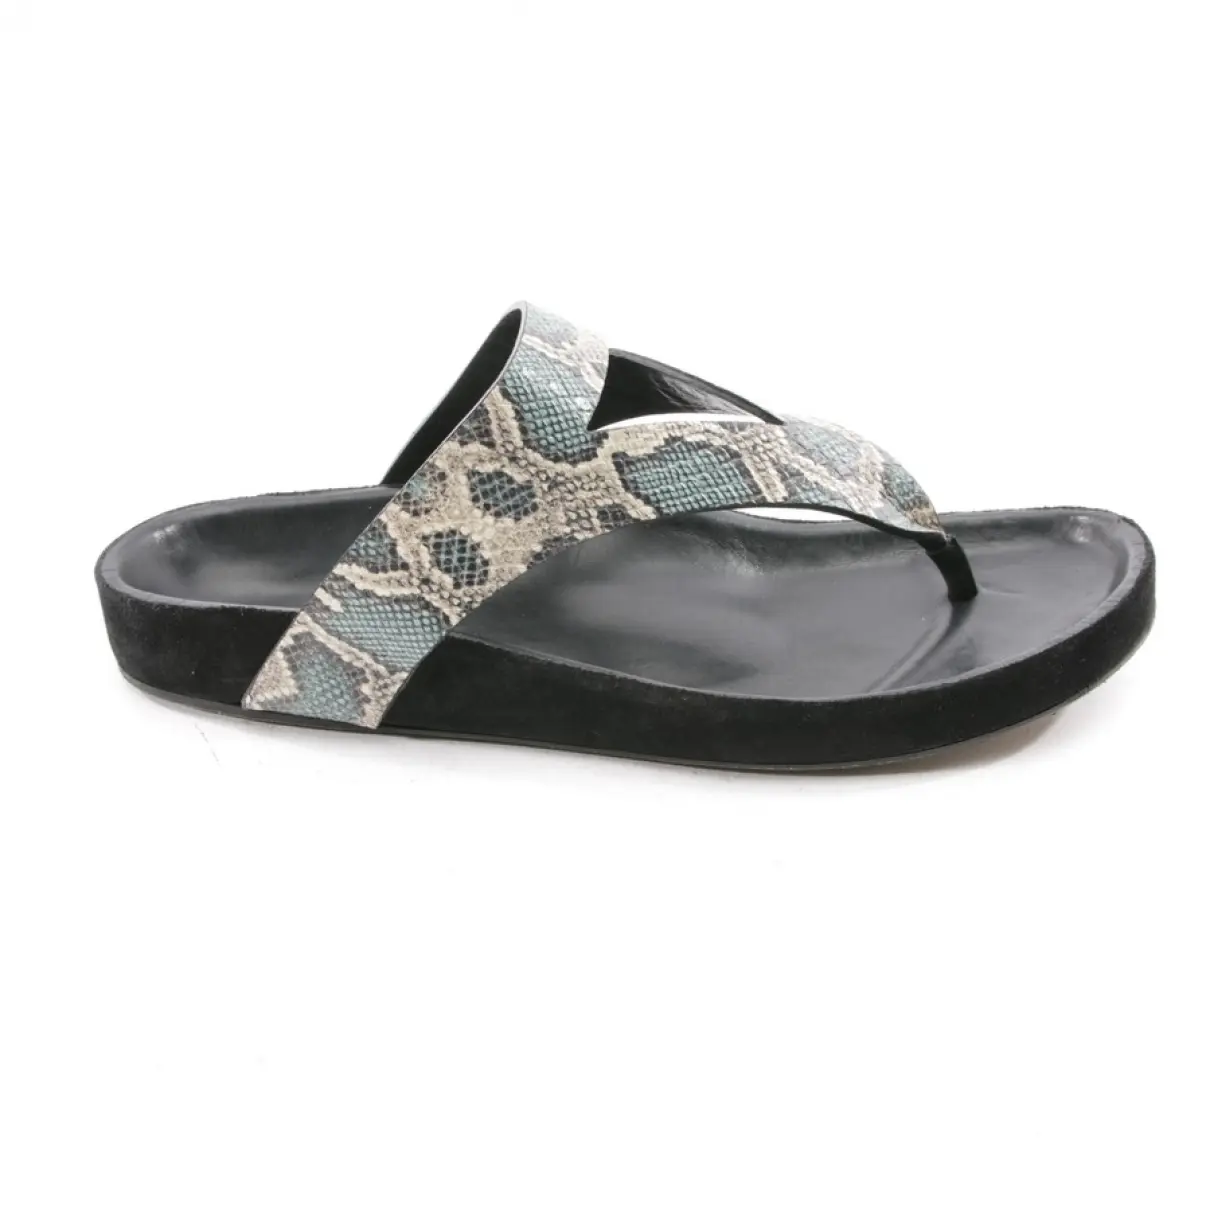 Buy Isabel Marant Python sandals online